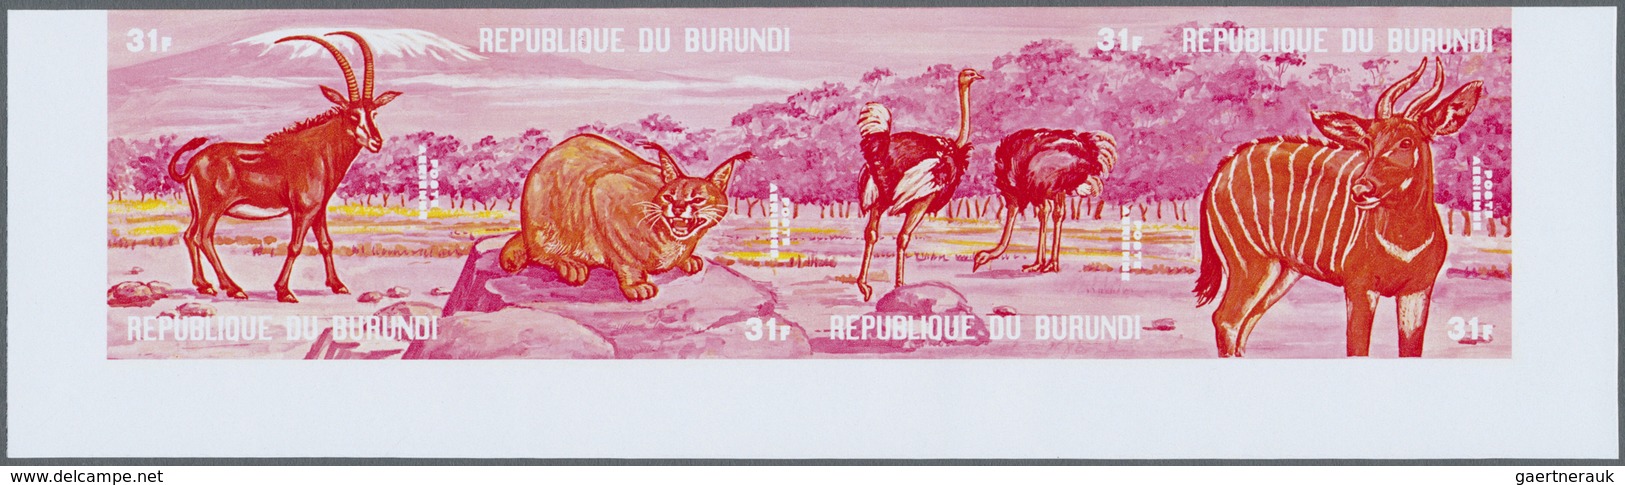 ** Thematik: Tiere- exotische Tiere / animals-exotic animals: 1971, African Animals - 6 items; Burundi,